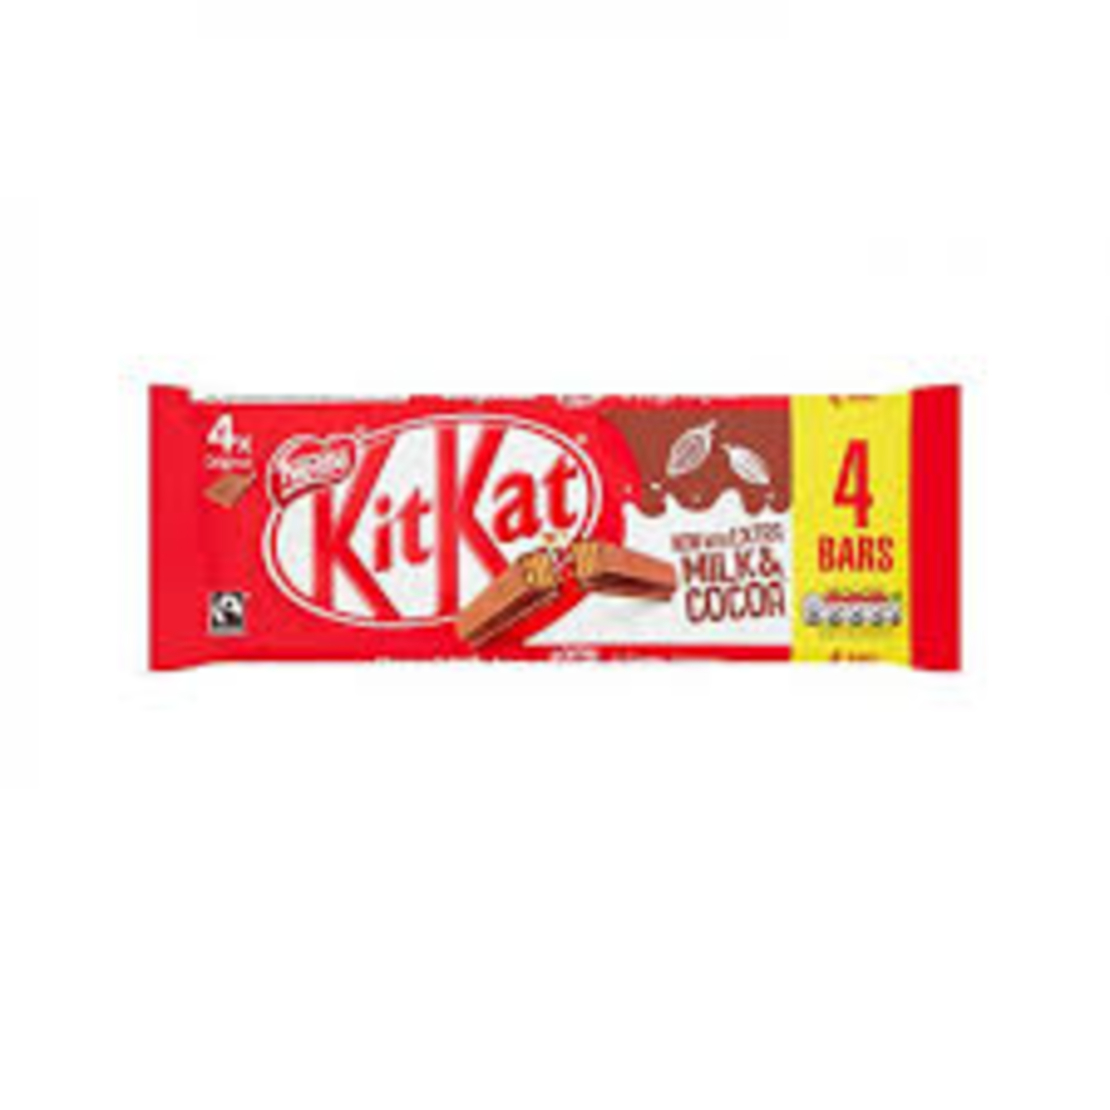 KitKat 4 Bars 166g